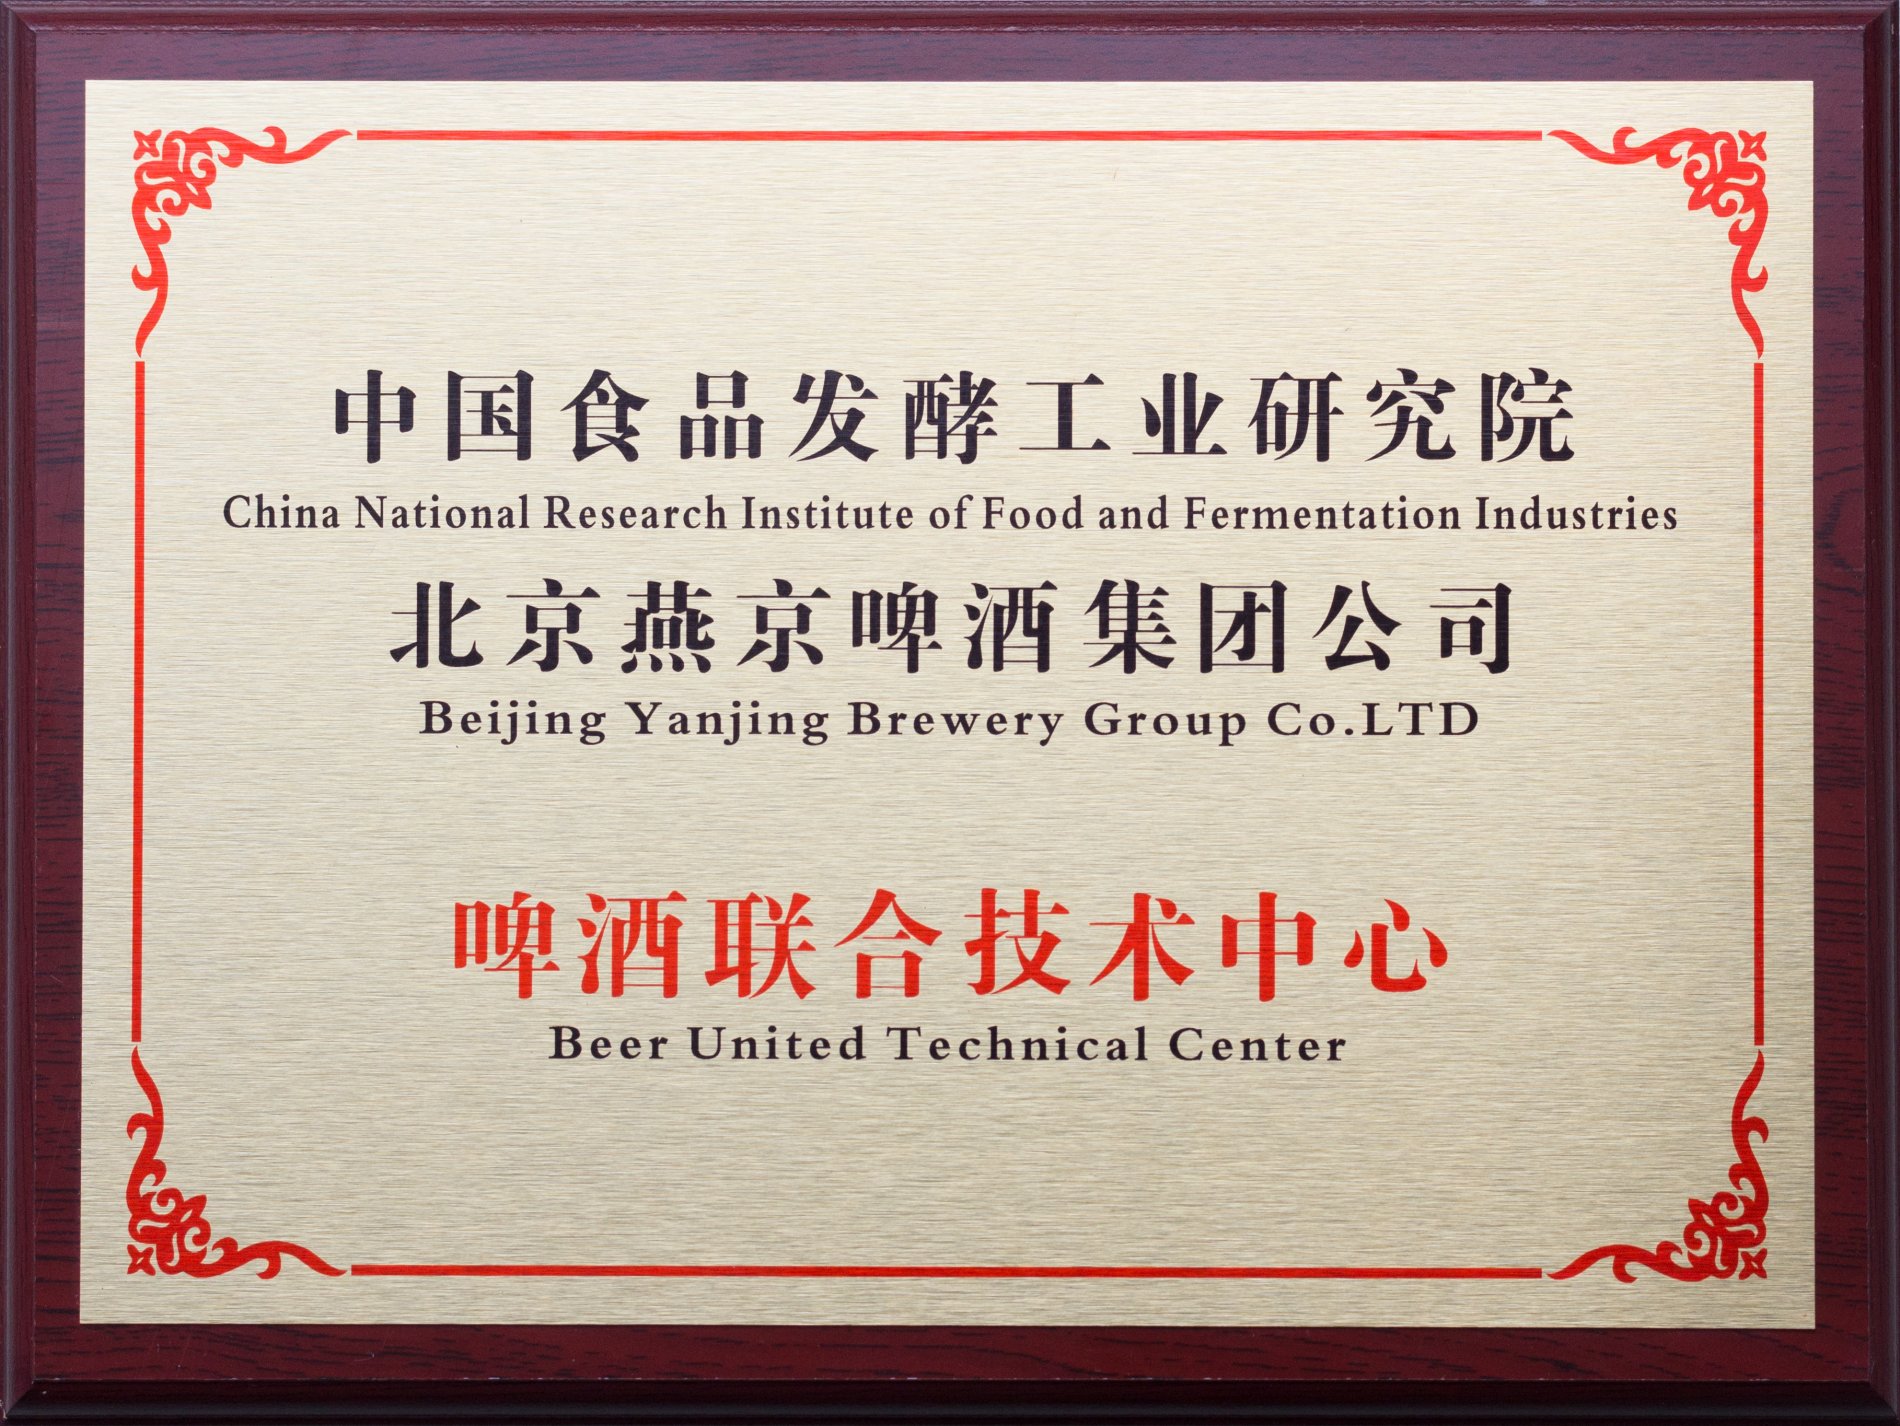 Beijing Yanjing Beer Joint Technology Center